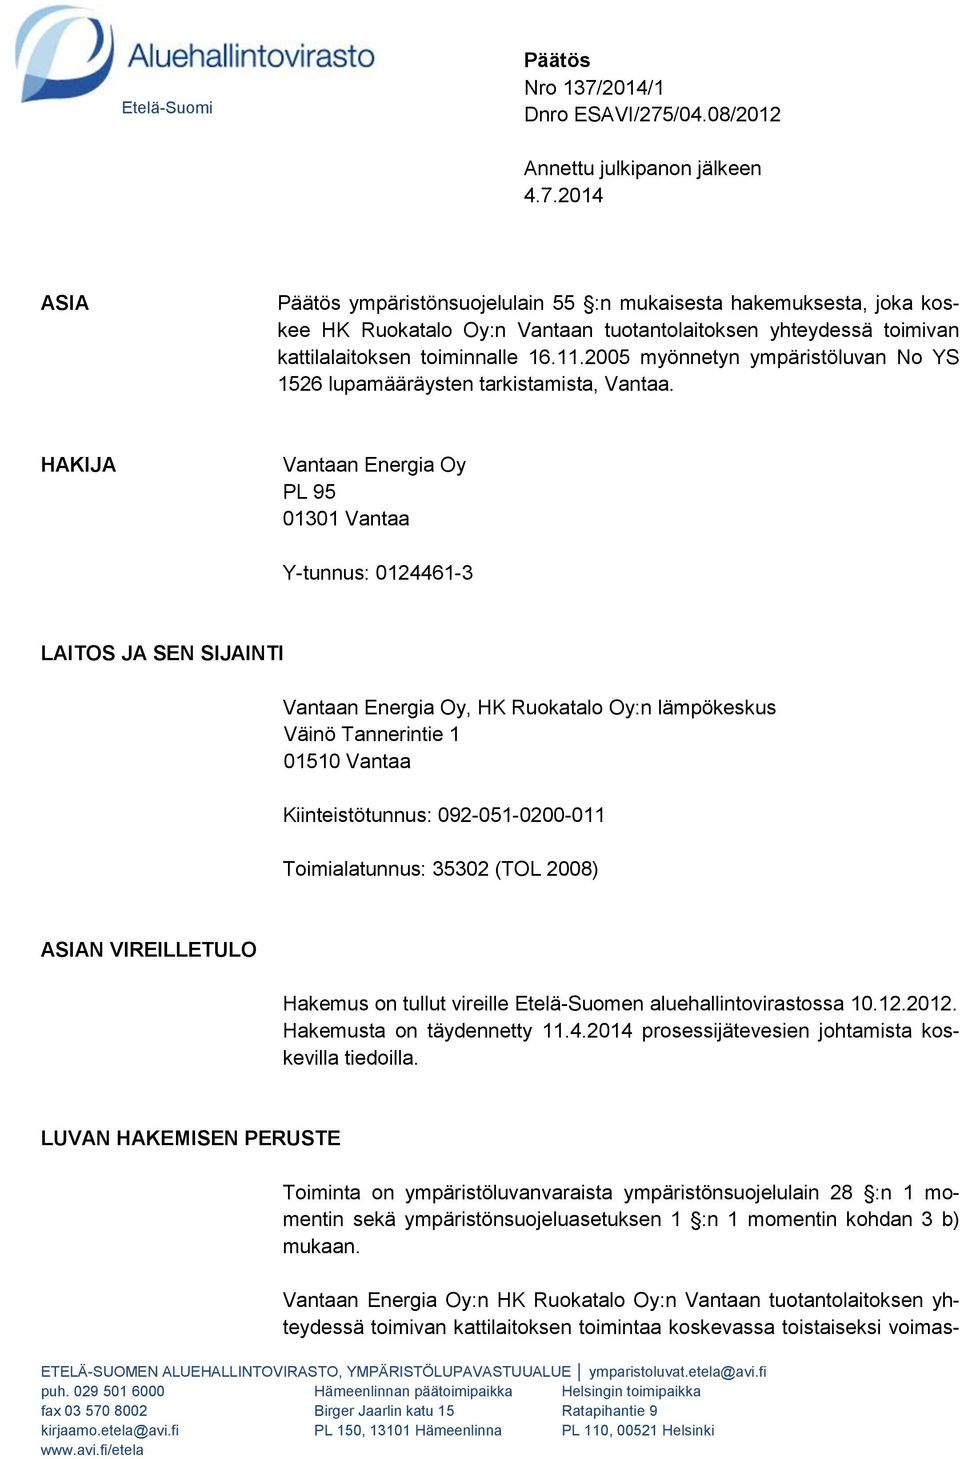 11.2005 myönnetyn ympäristöluvan No YS 1526 lupamääräysten tarkistamista, Vantaa.